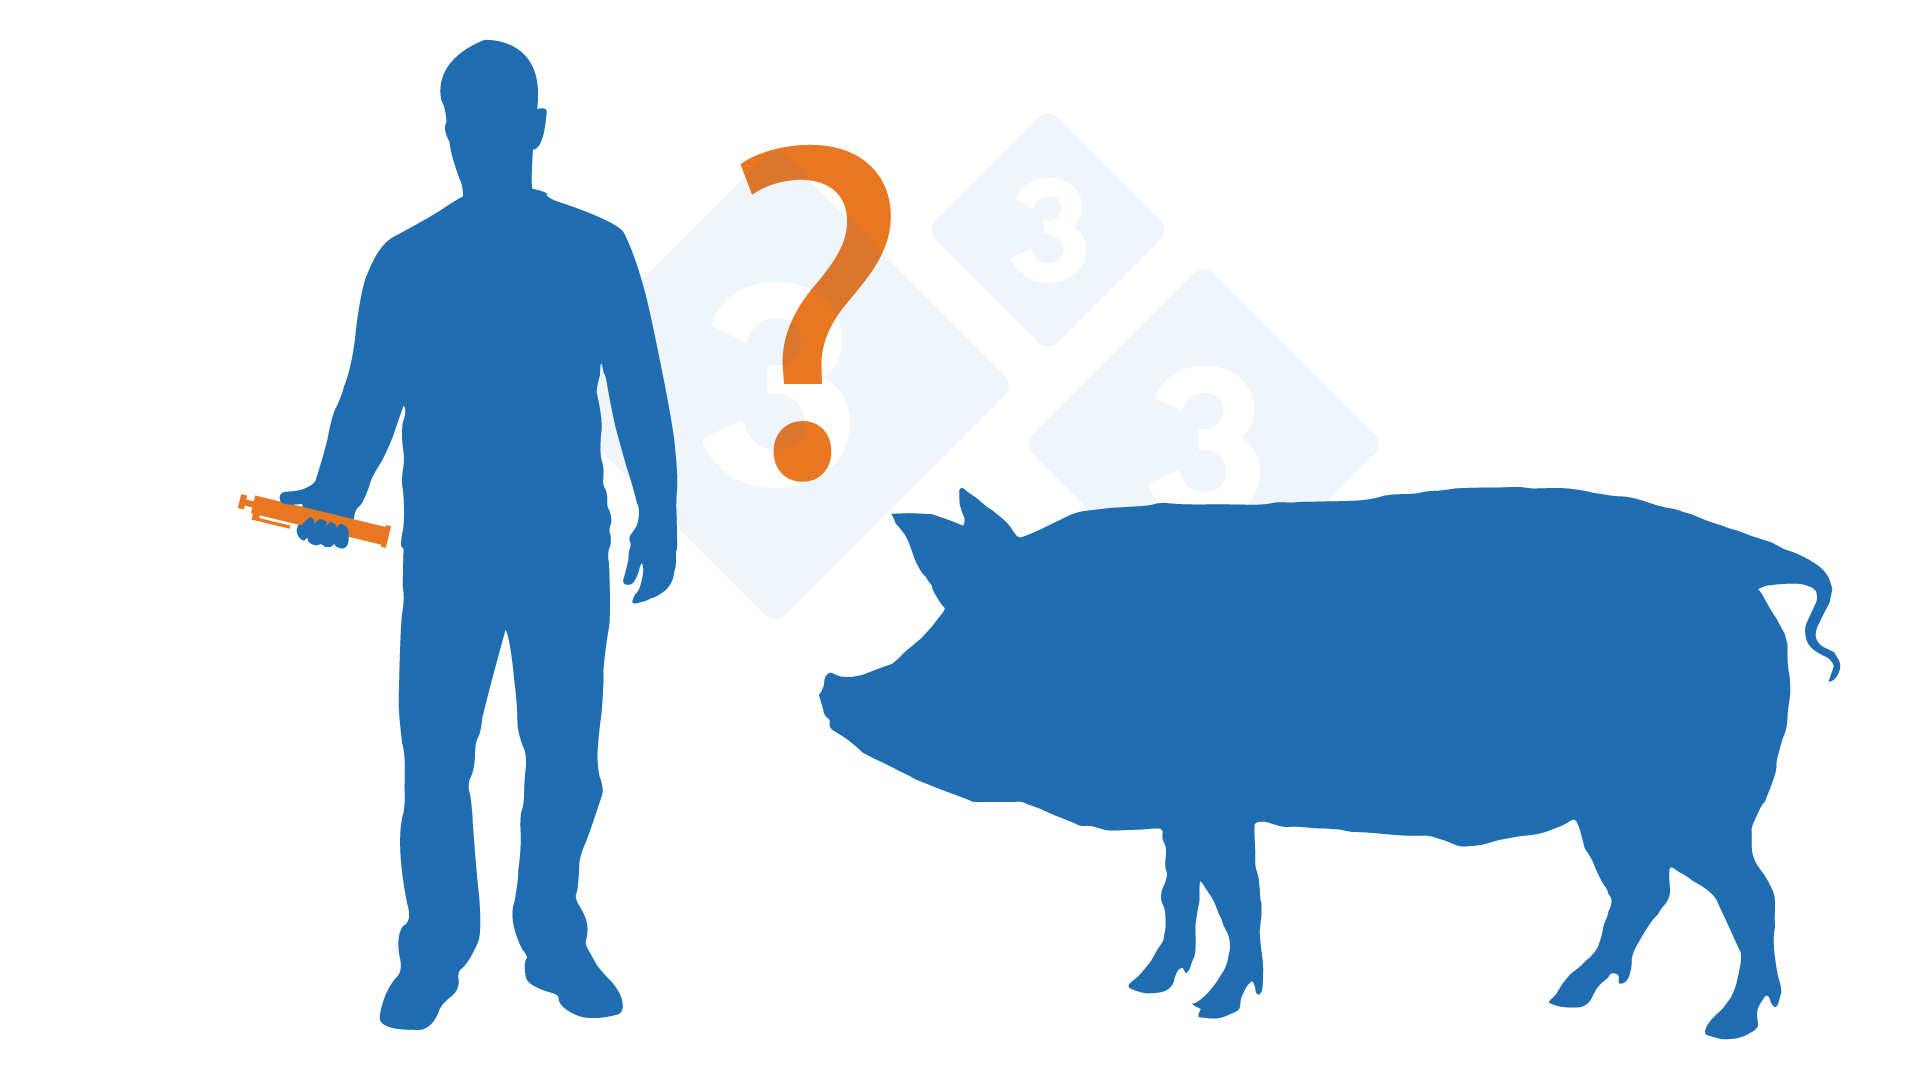 Reproductive failure - Articles - pig333, pig to pork community